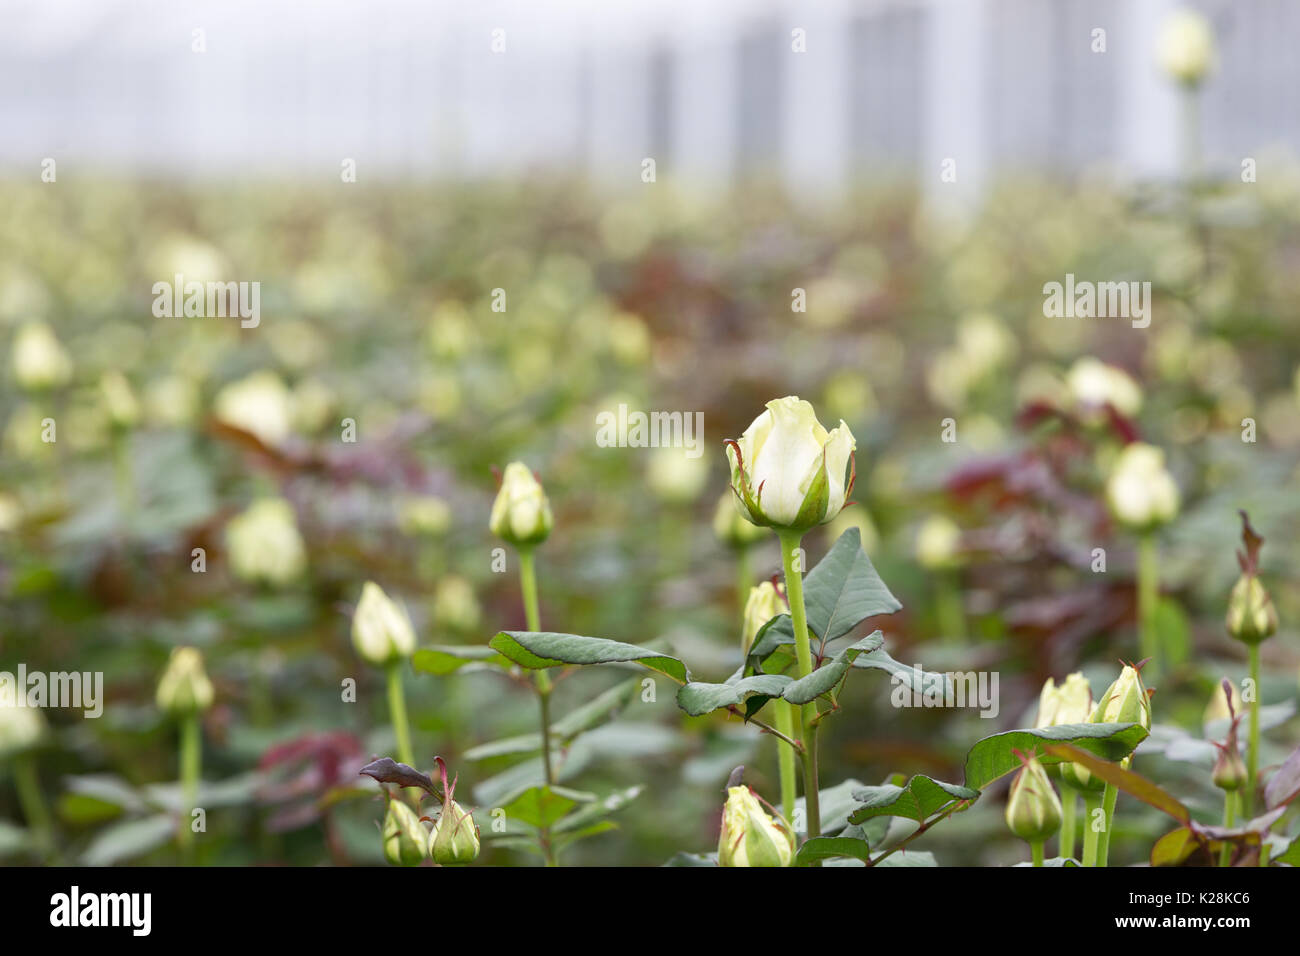 MOERKAPELLE, Westland, Niederlande - Juni 5, 2017: Weiße Rosen wachsen in einem großen Feld in einem modernen Gewächshaus. Stockfoto